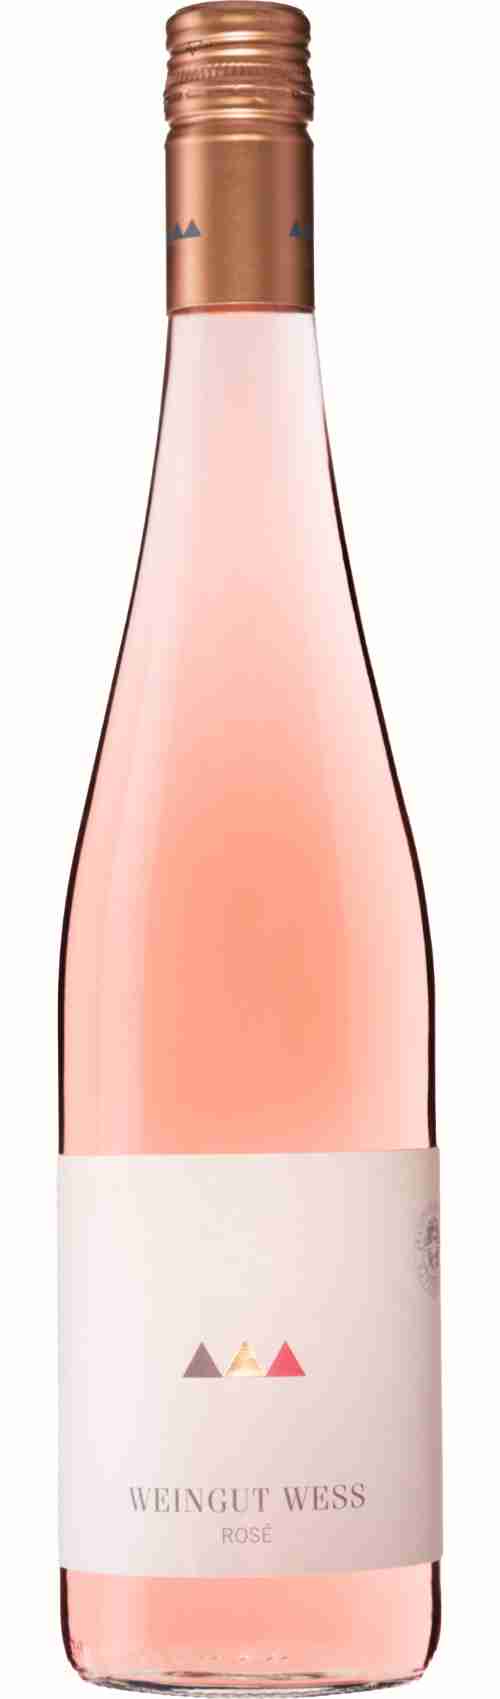 Weinflasche Rosé vom Weingut Wess